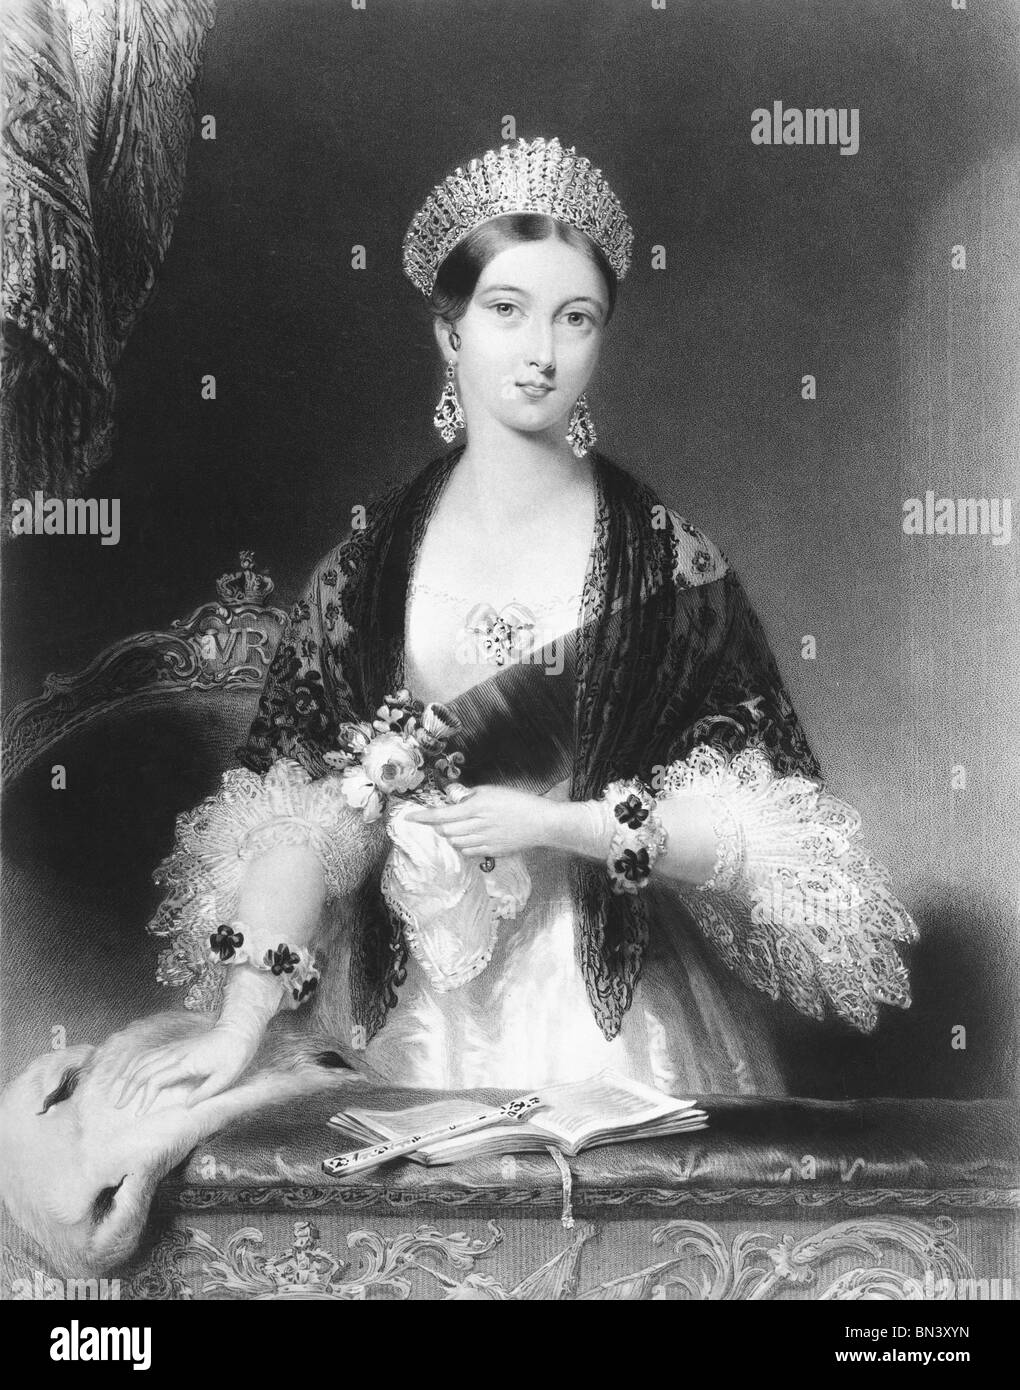 La regina Victoria al Drury Lane nella sua scatola, da C.E.Wagstaff. Londra, Inghilterra, 1838 Foto Stock